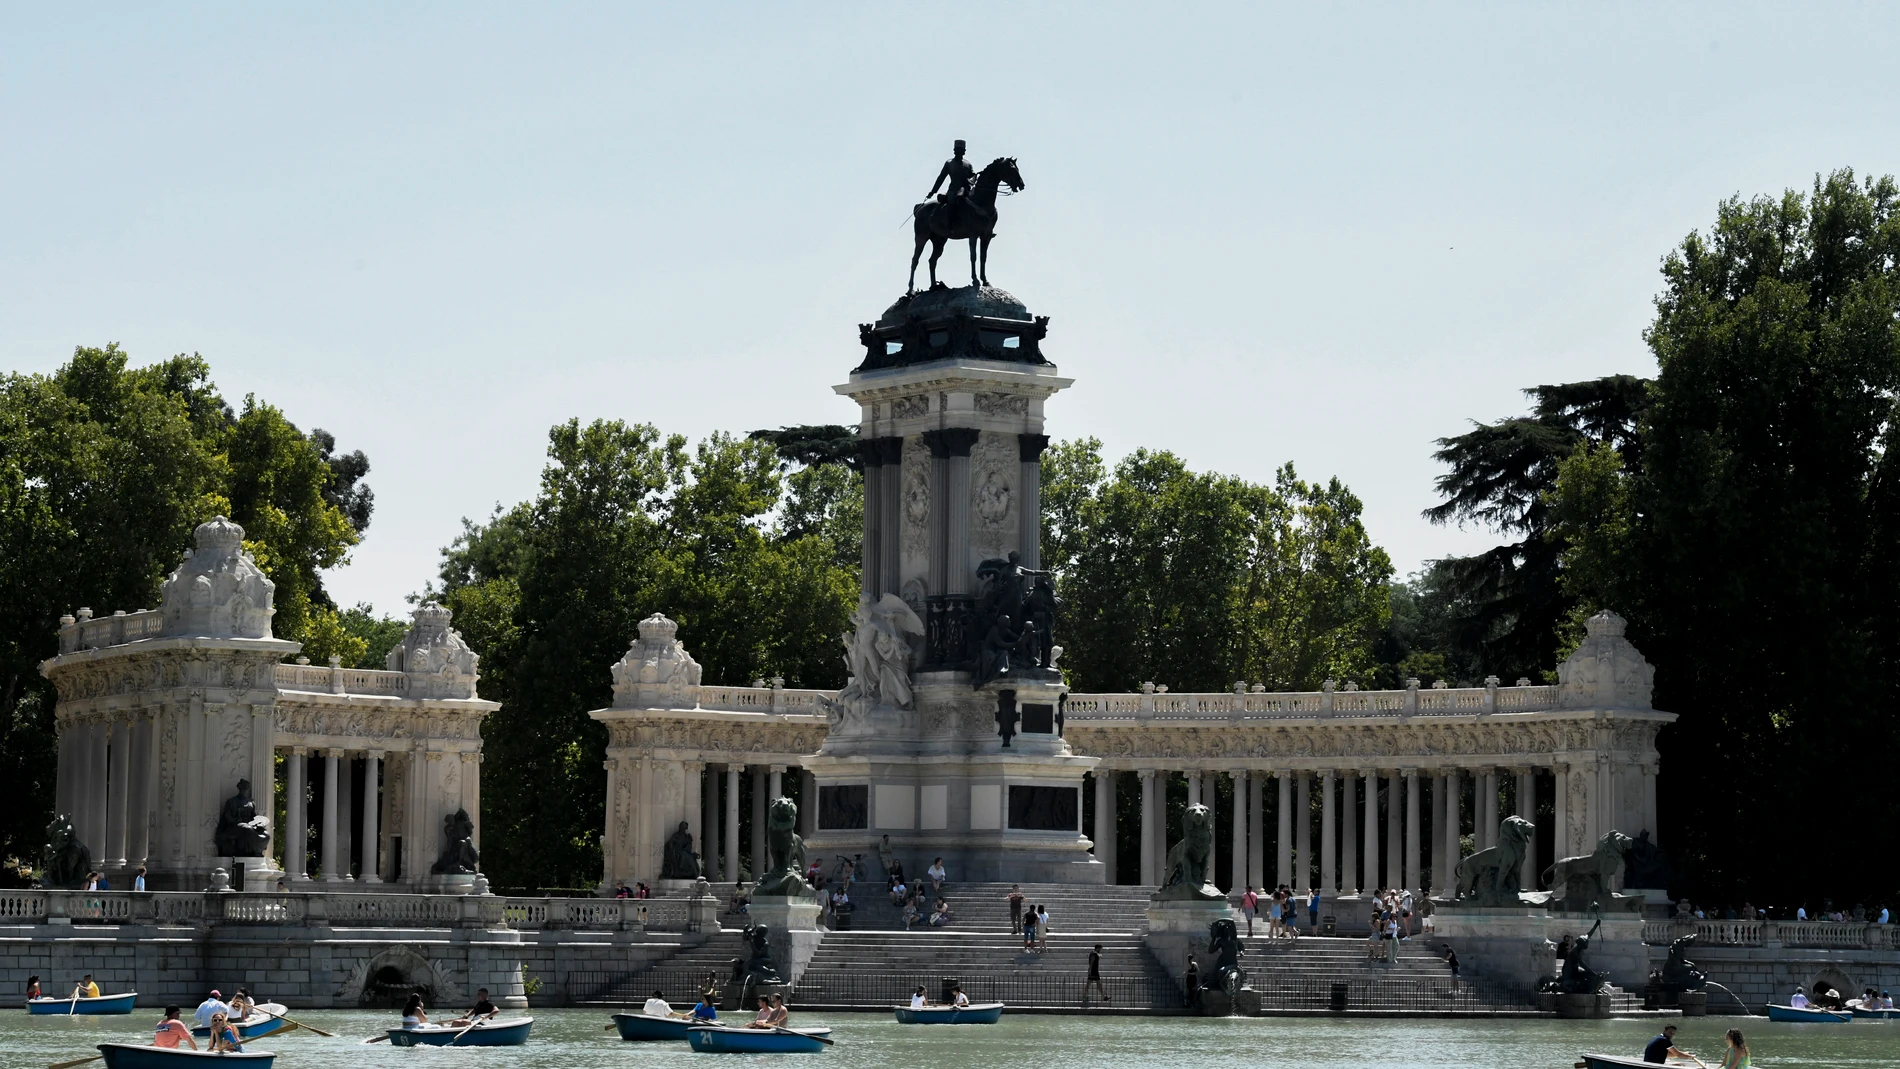 Monumento a Alfonso XII en el parque de El Retiro